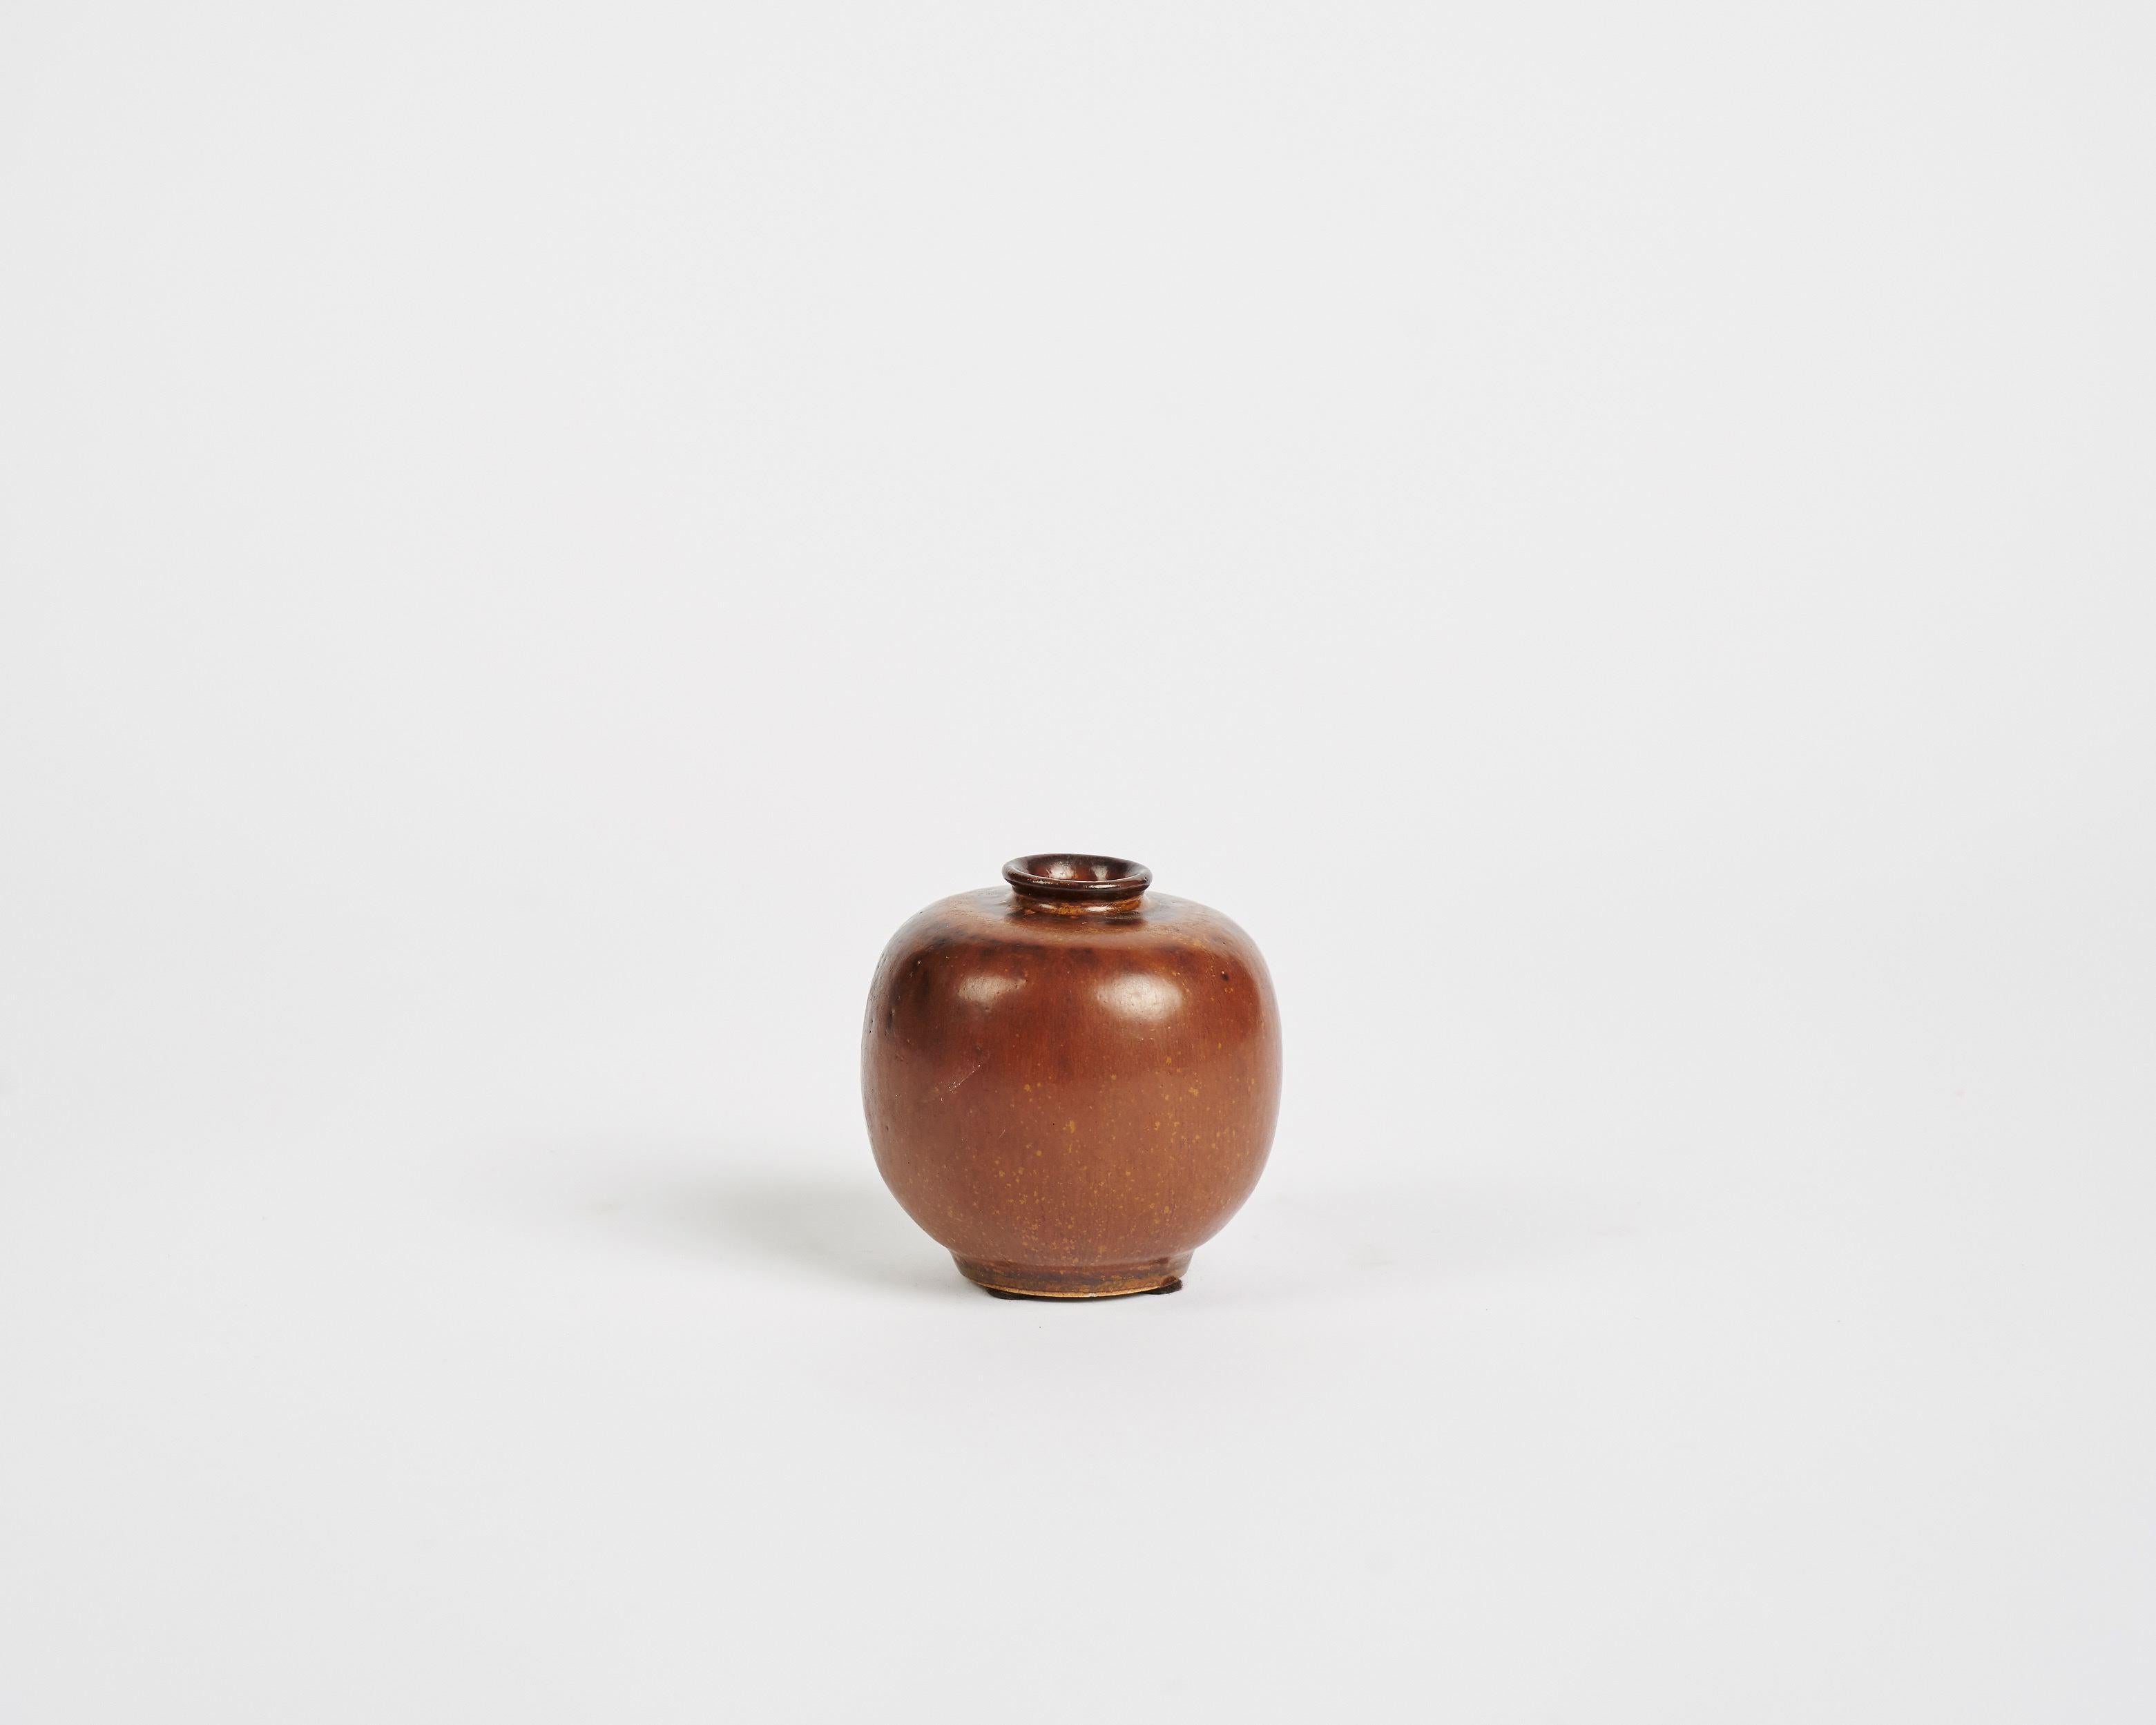 Danish Arne Bang, Round Ceramic Vase, Denmark, 1930s